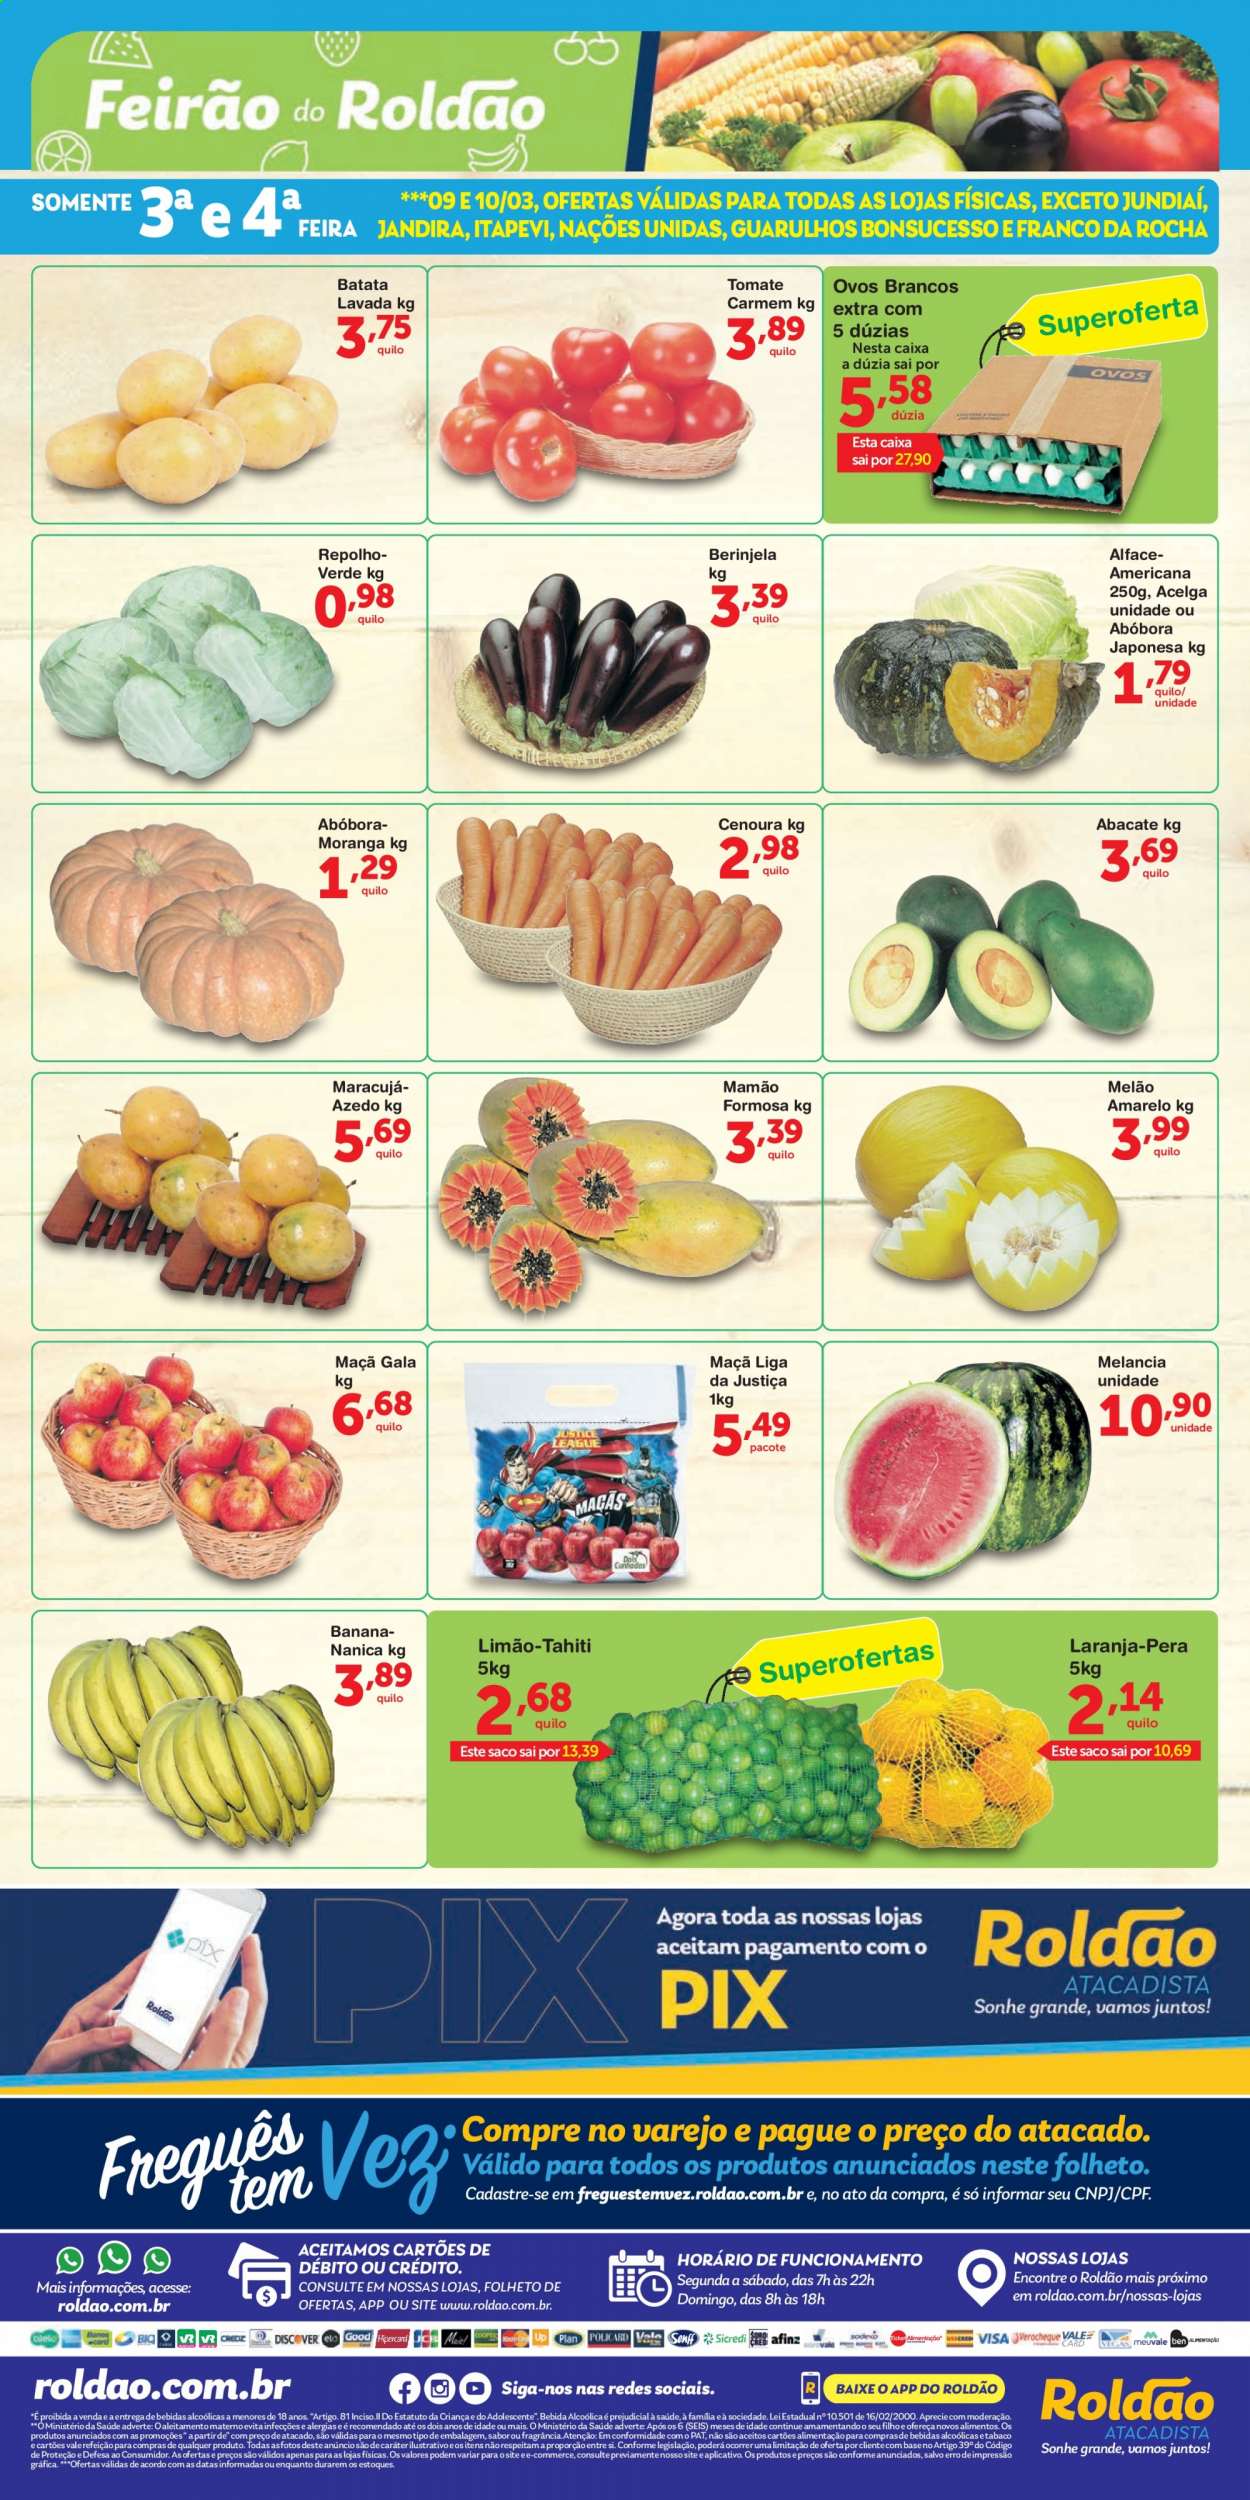 thumbnail - Folheto Roldão - 09/03/2021 - 10/03/2021 - Produtos em promoção - pera, melão, abacate, melancia, limão, mamão, tomate, batata, abóbora, acelga, cenoura, ovos, ovos brancos. Página 1.